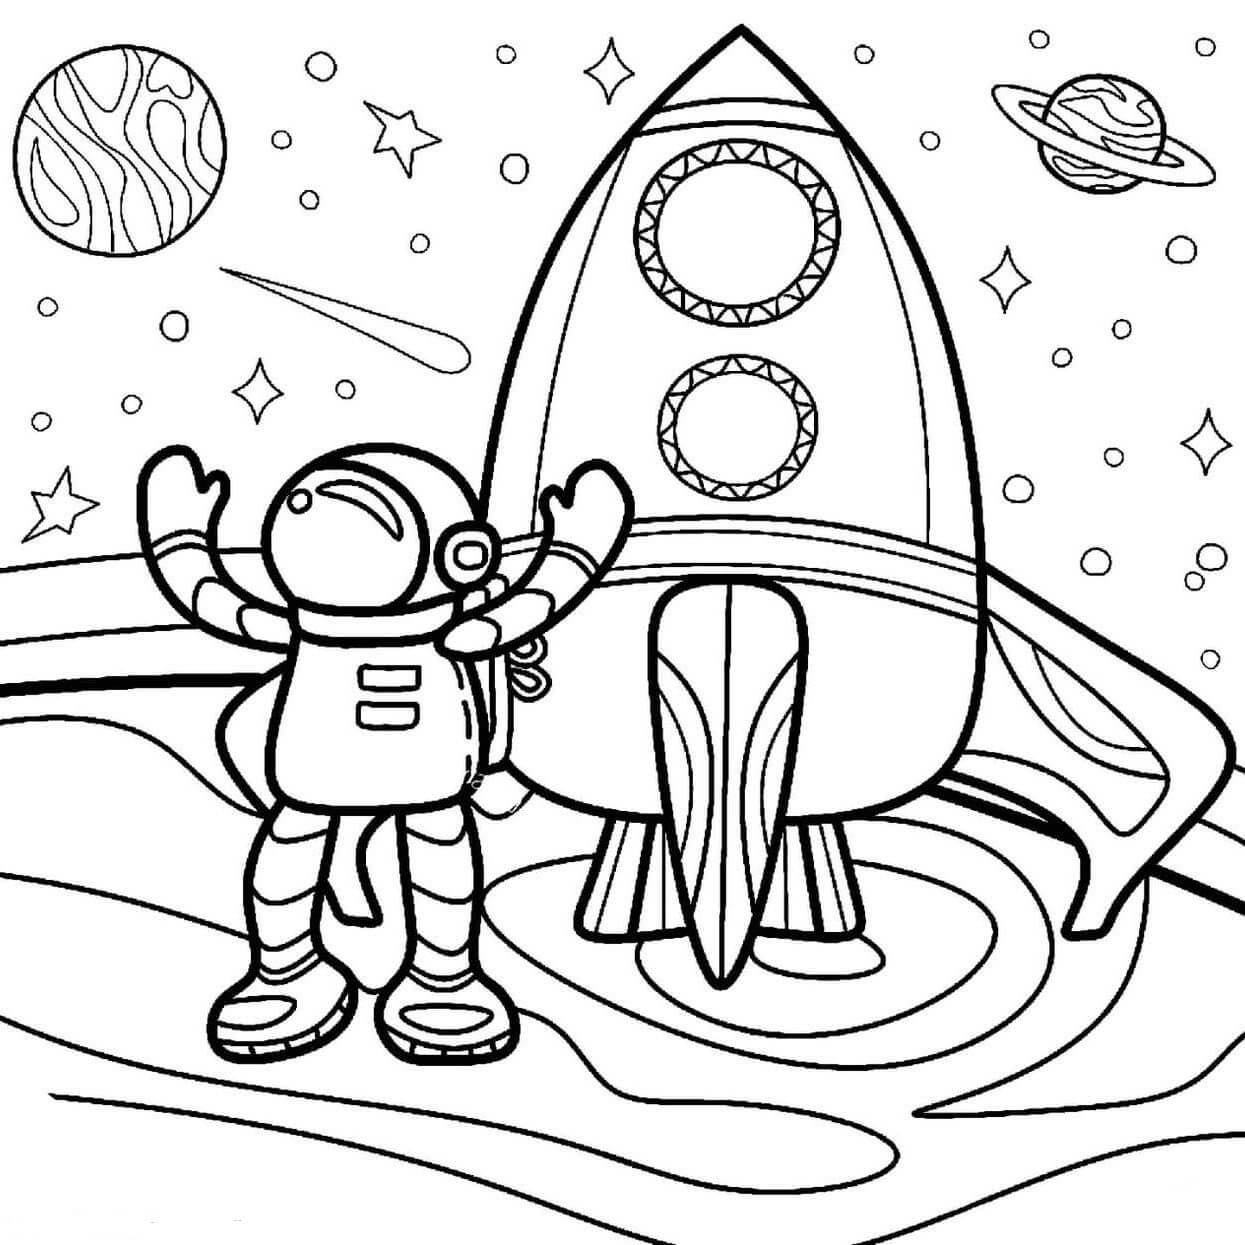 Dibujos de Astronauta de Dibujos Animados con Cohete para colorear